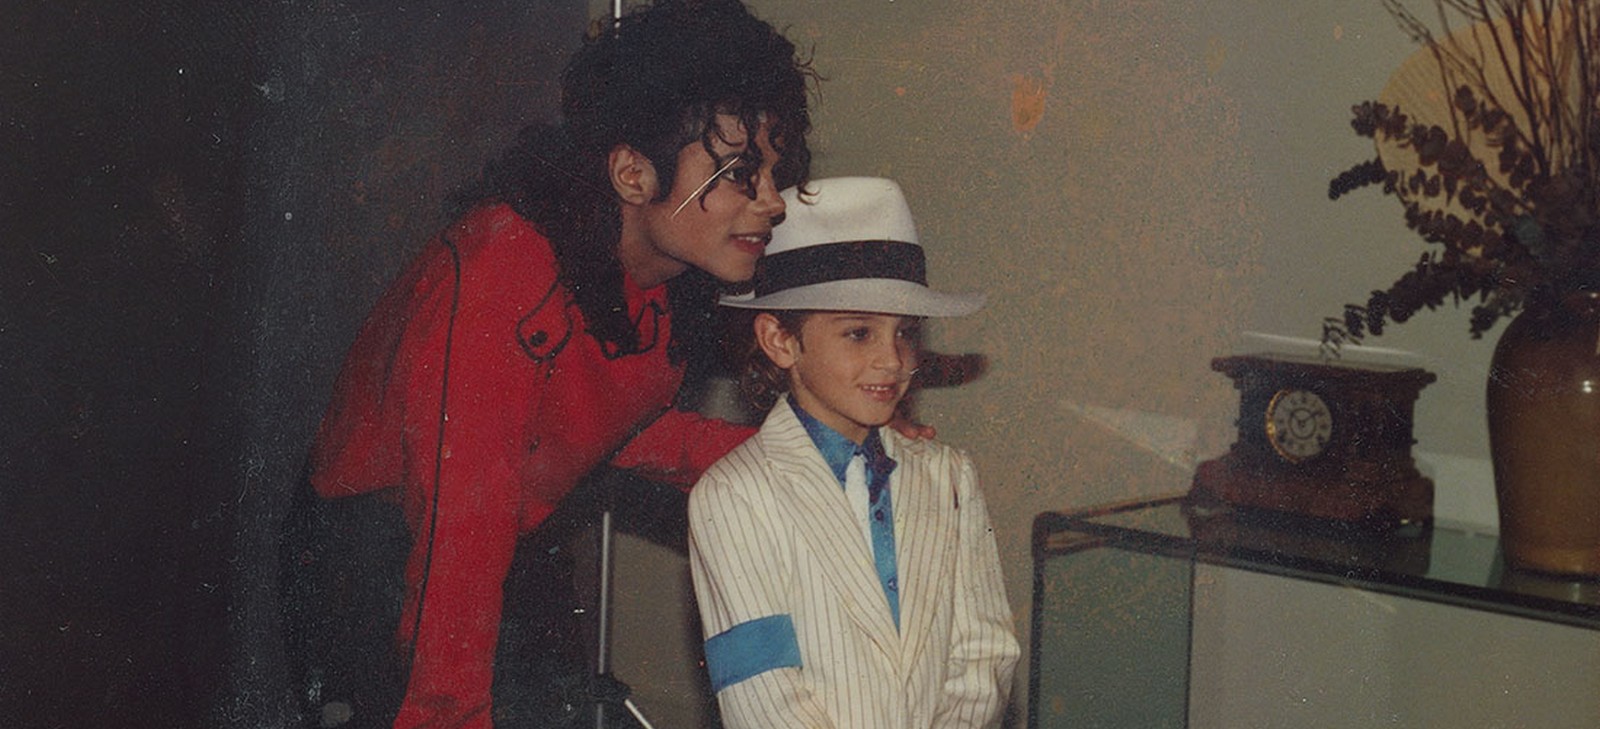 Michael Jackson dans le documentaire Leaving Neverland de Dan Reed (USA, 2019)